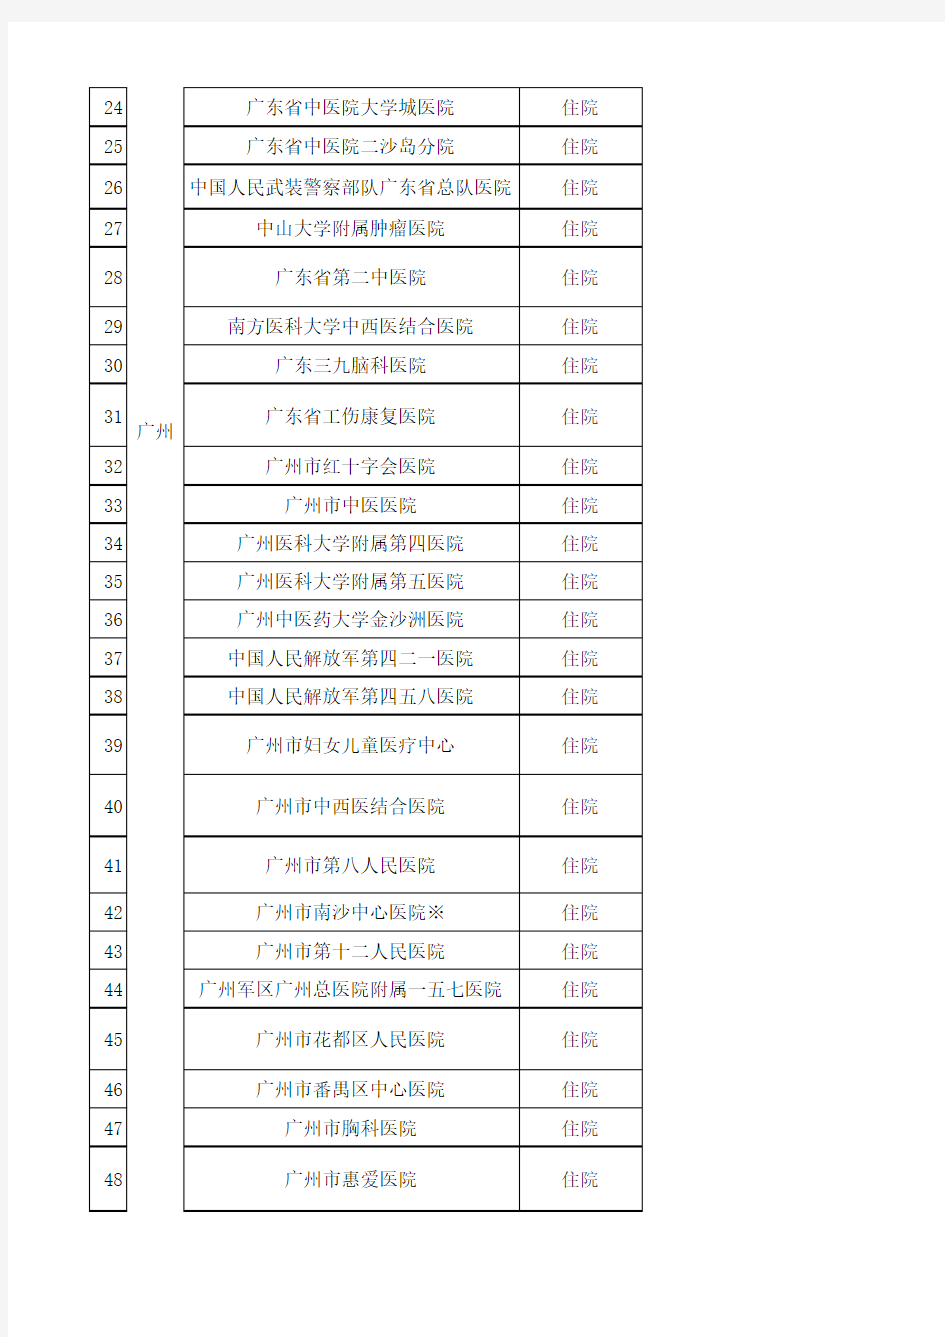 深圳市市外定点医疗机构管理的医疗机构名单